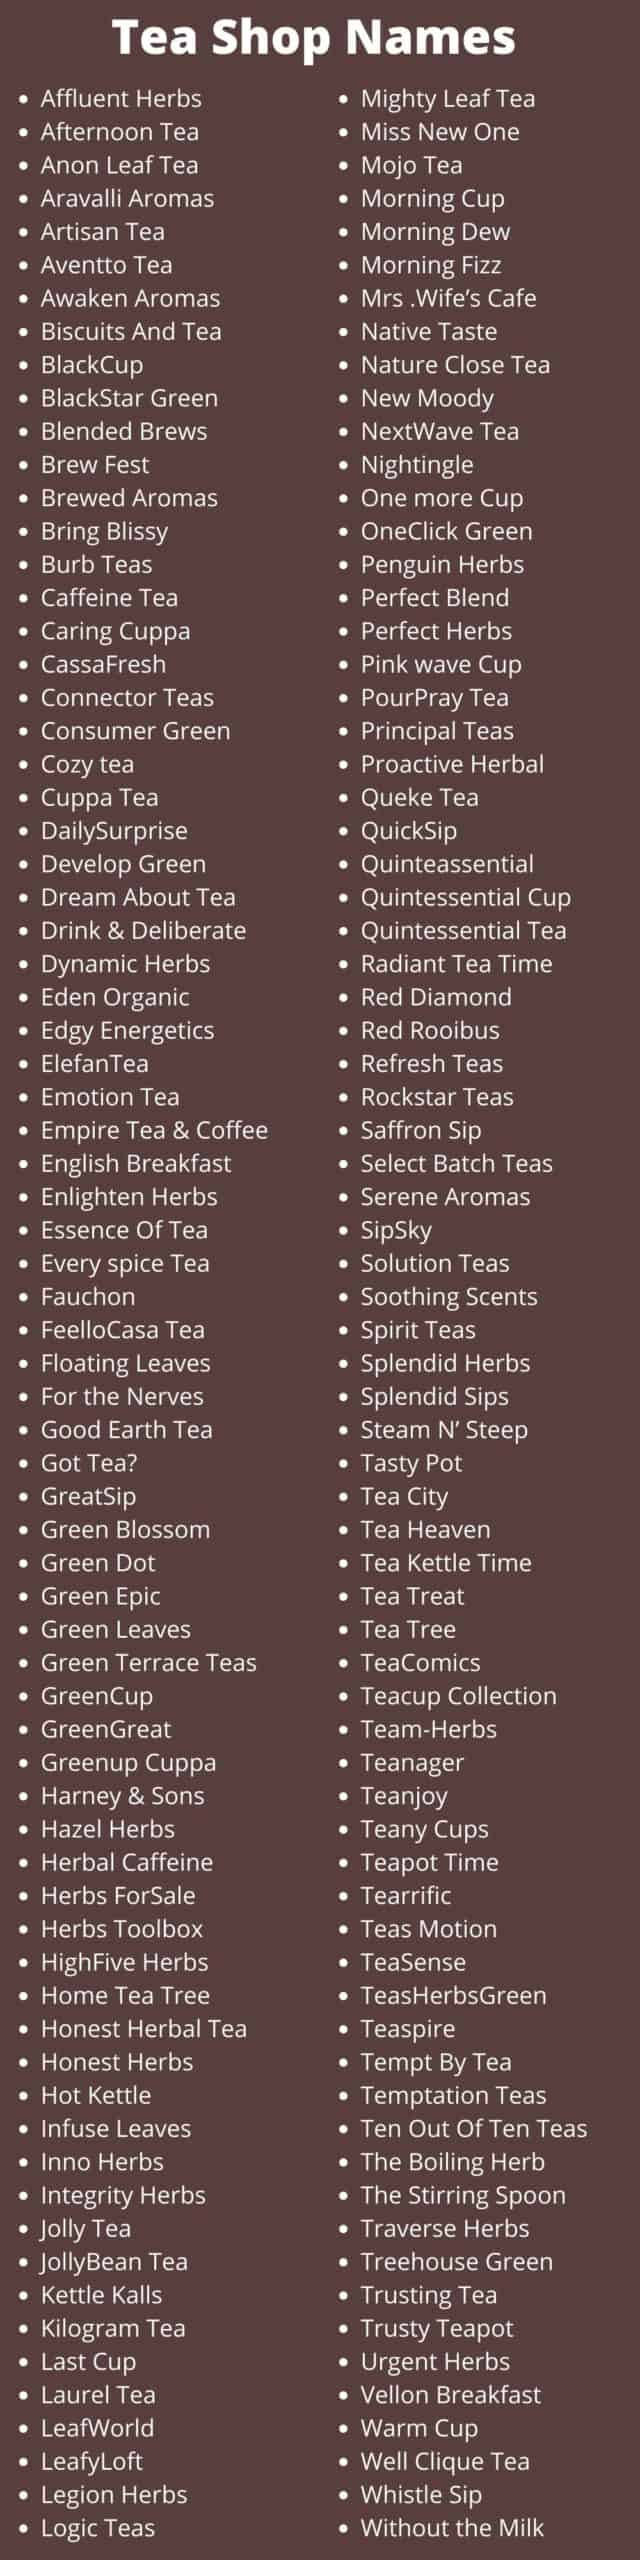 Tea Shop Names